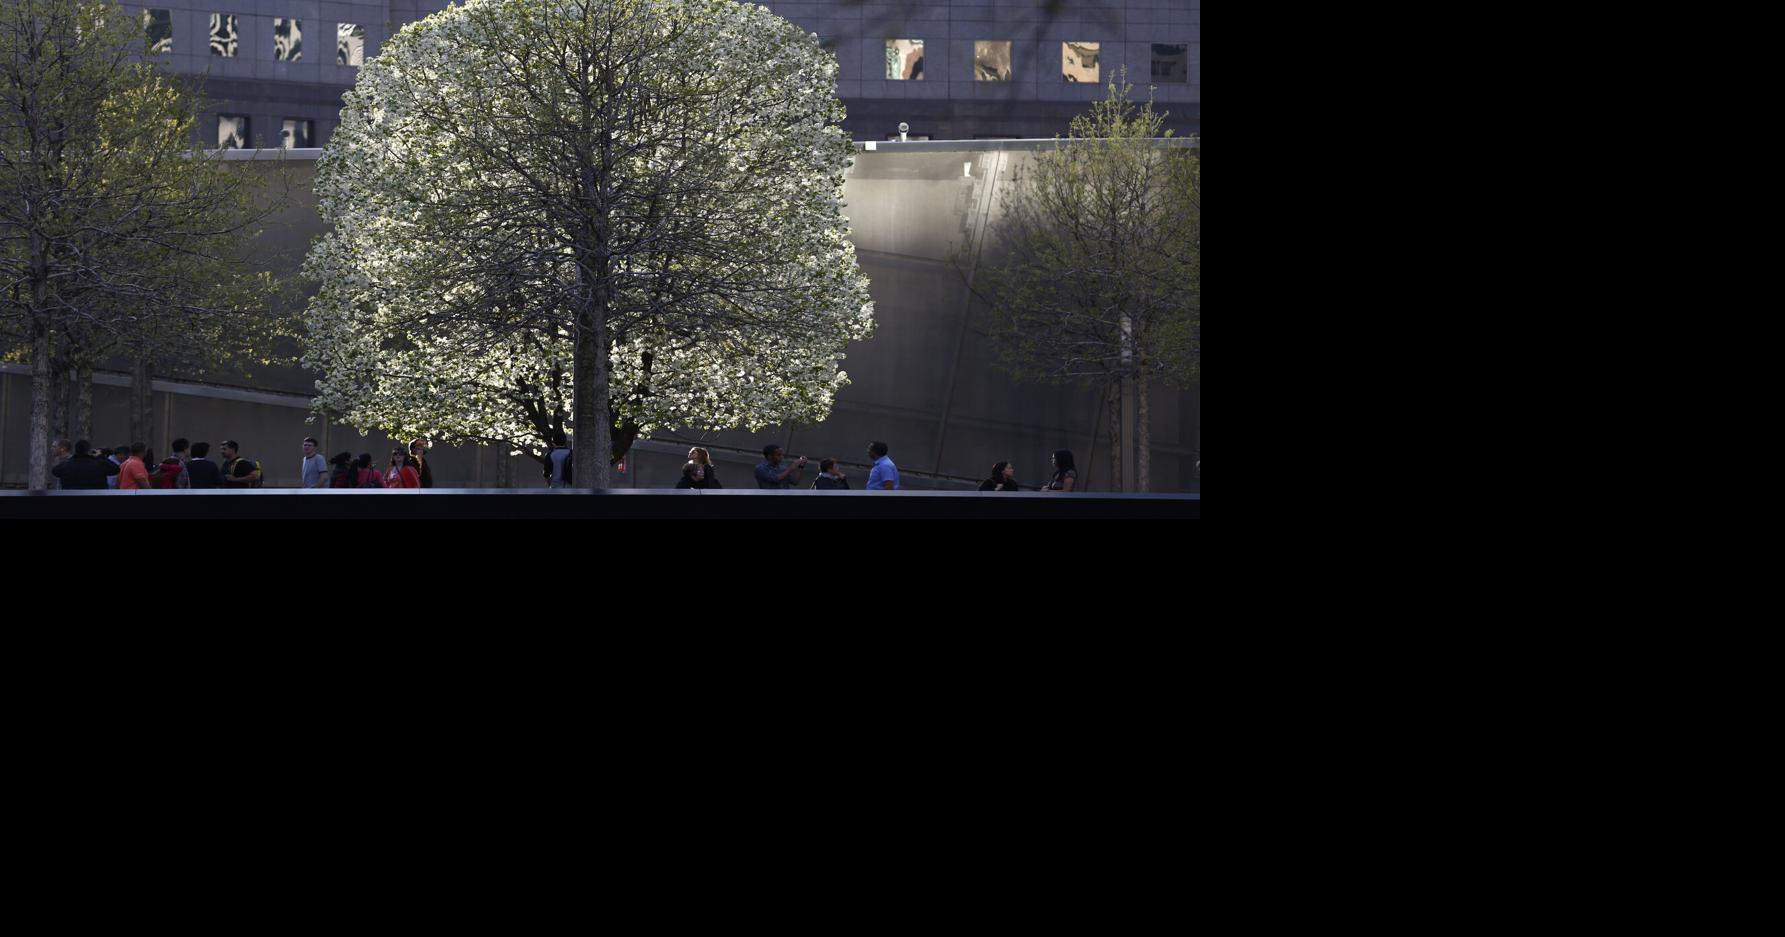 The Survivor Tree Blooms at Ground Zero